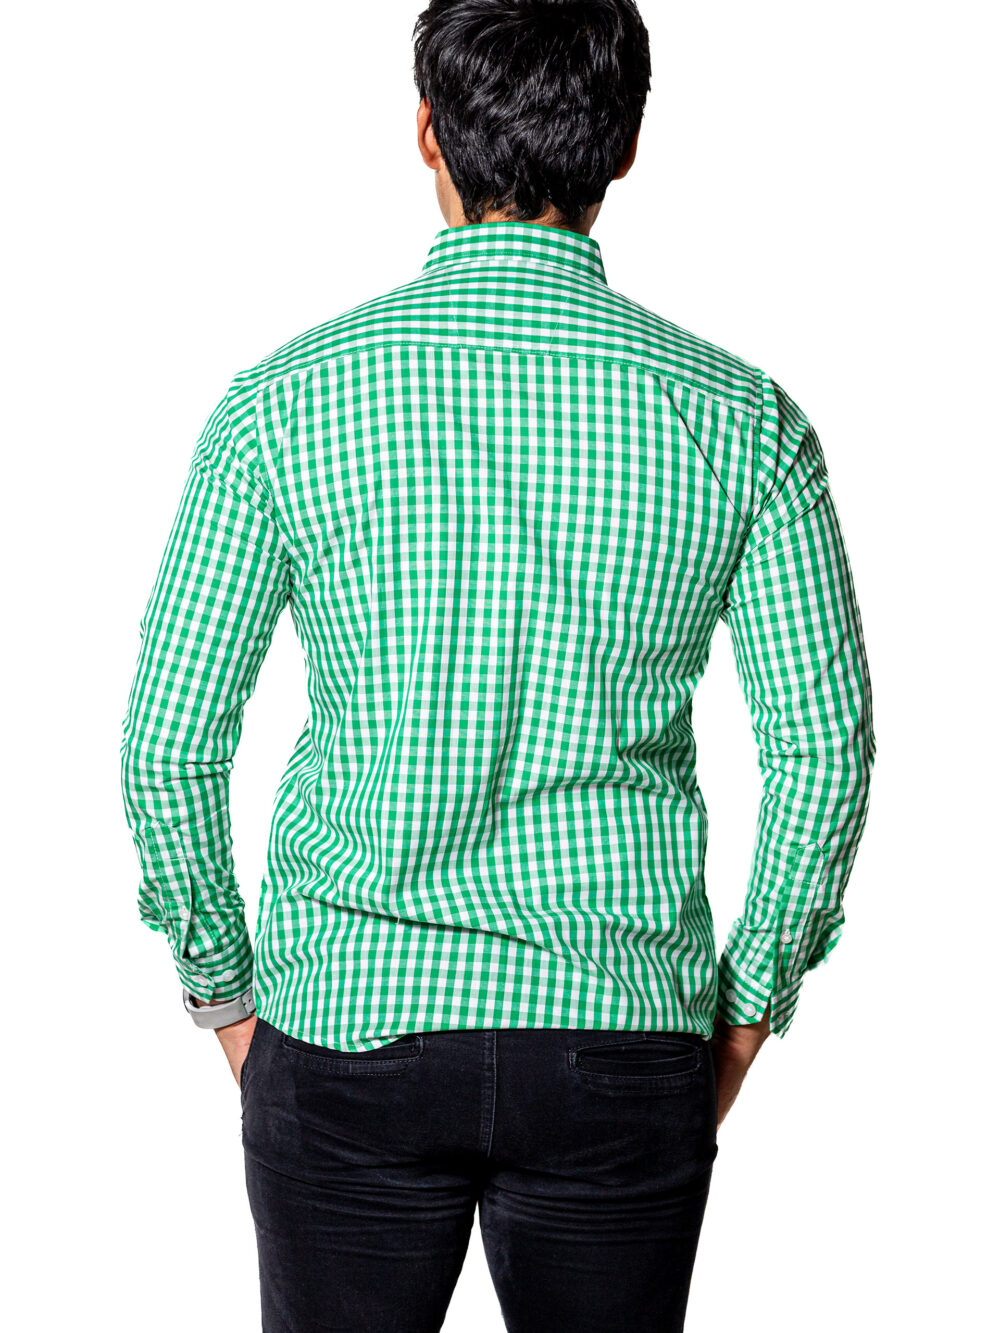 Camisa Hombre Casual Slim Fit Cuadros Verdes, Blancos 004 5